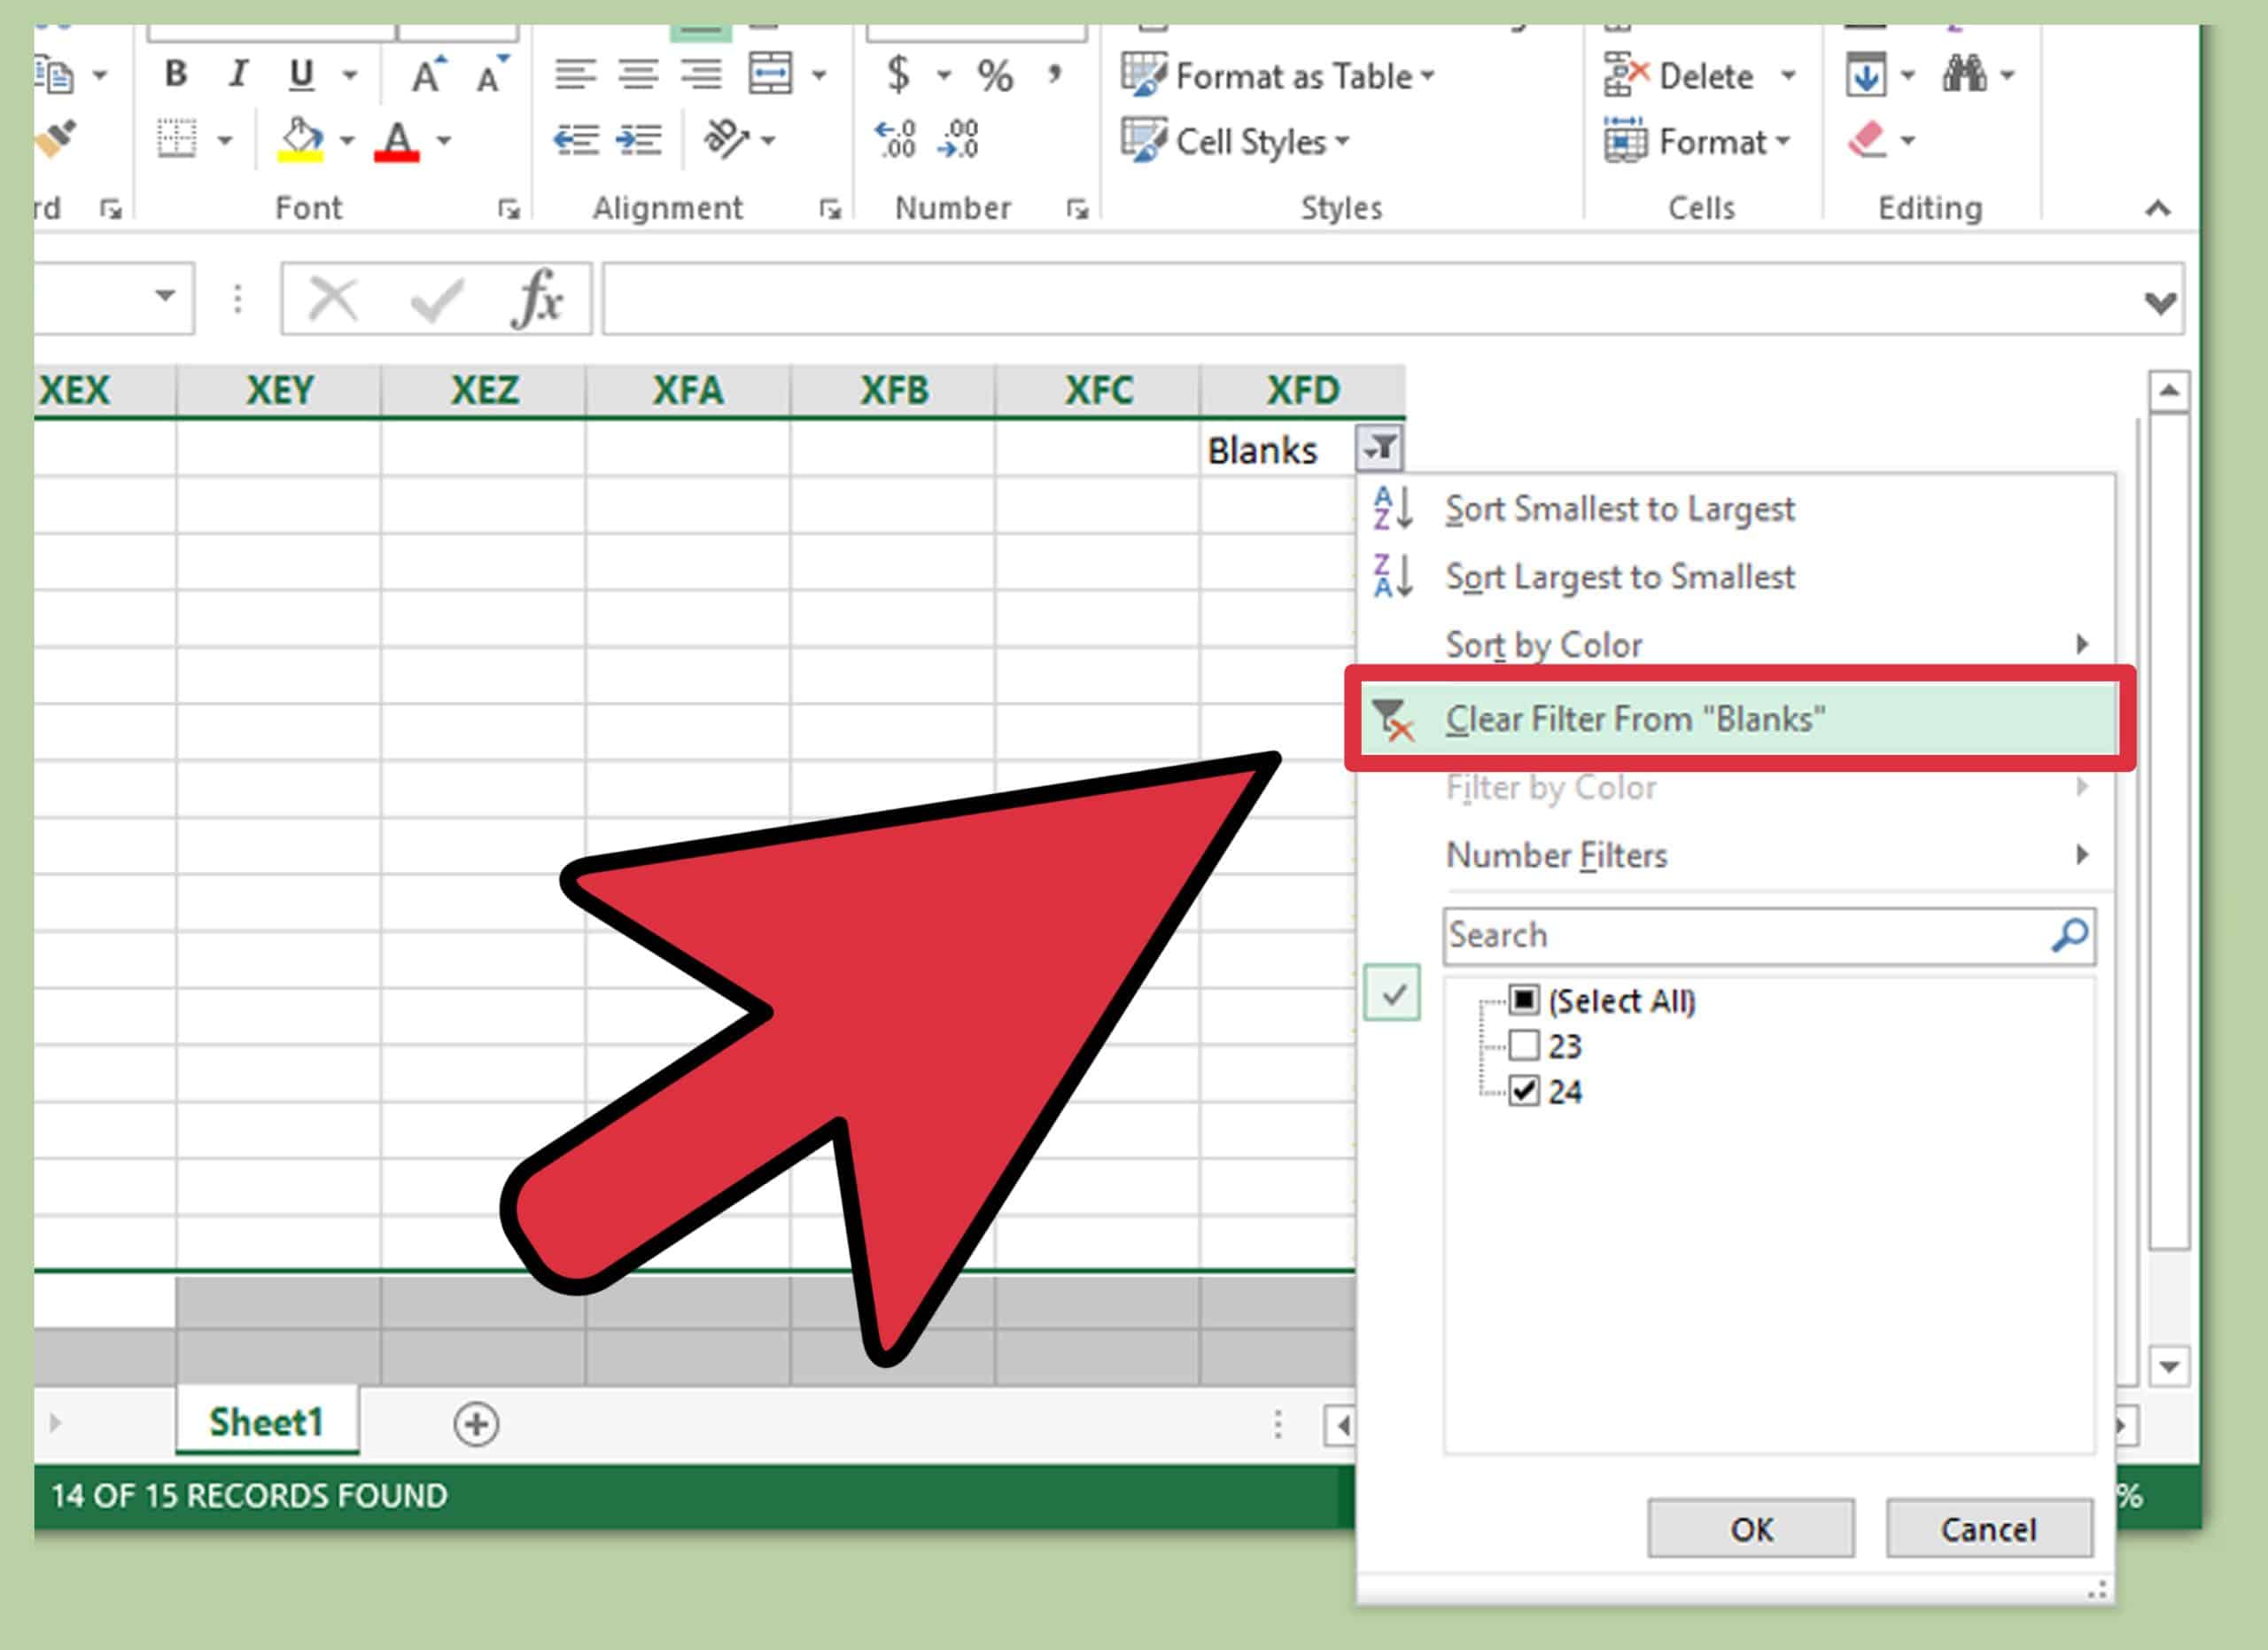 Apprendre Excel Le Meilleur Site Pour Apprendre Facilement Et Bien 7016